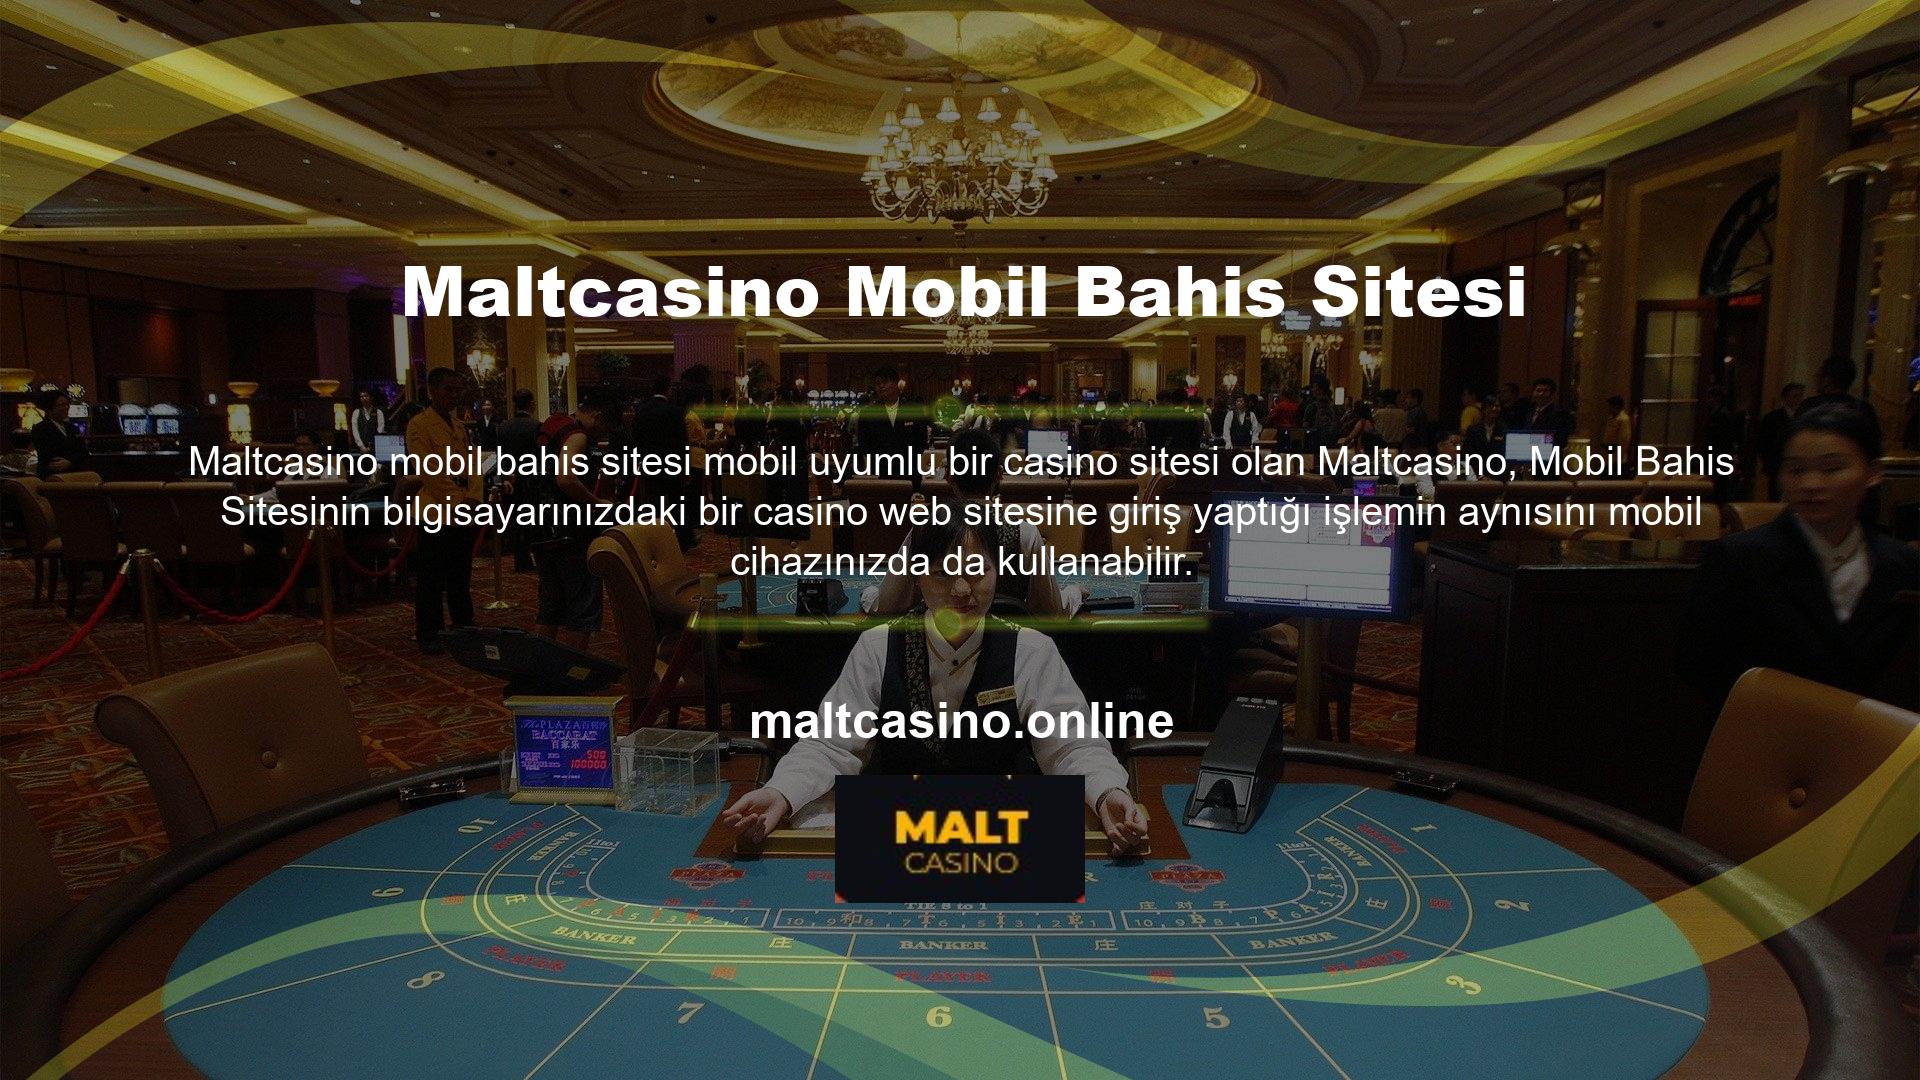 Maltcasino, mobil cihazlarla tam uyumlu, bilgisayarda yapılabilecek tüm görevleri mobil cihaz üzerinden gerçekleştirmenize olanak tanıyan, bilgisayara özel bir web sitesi geliştirmiştir